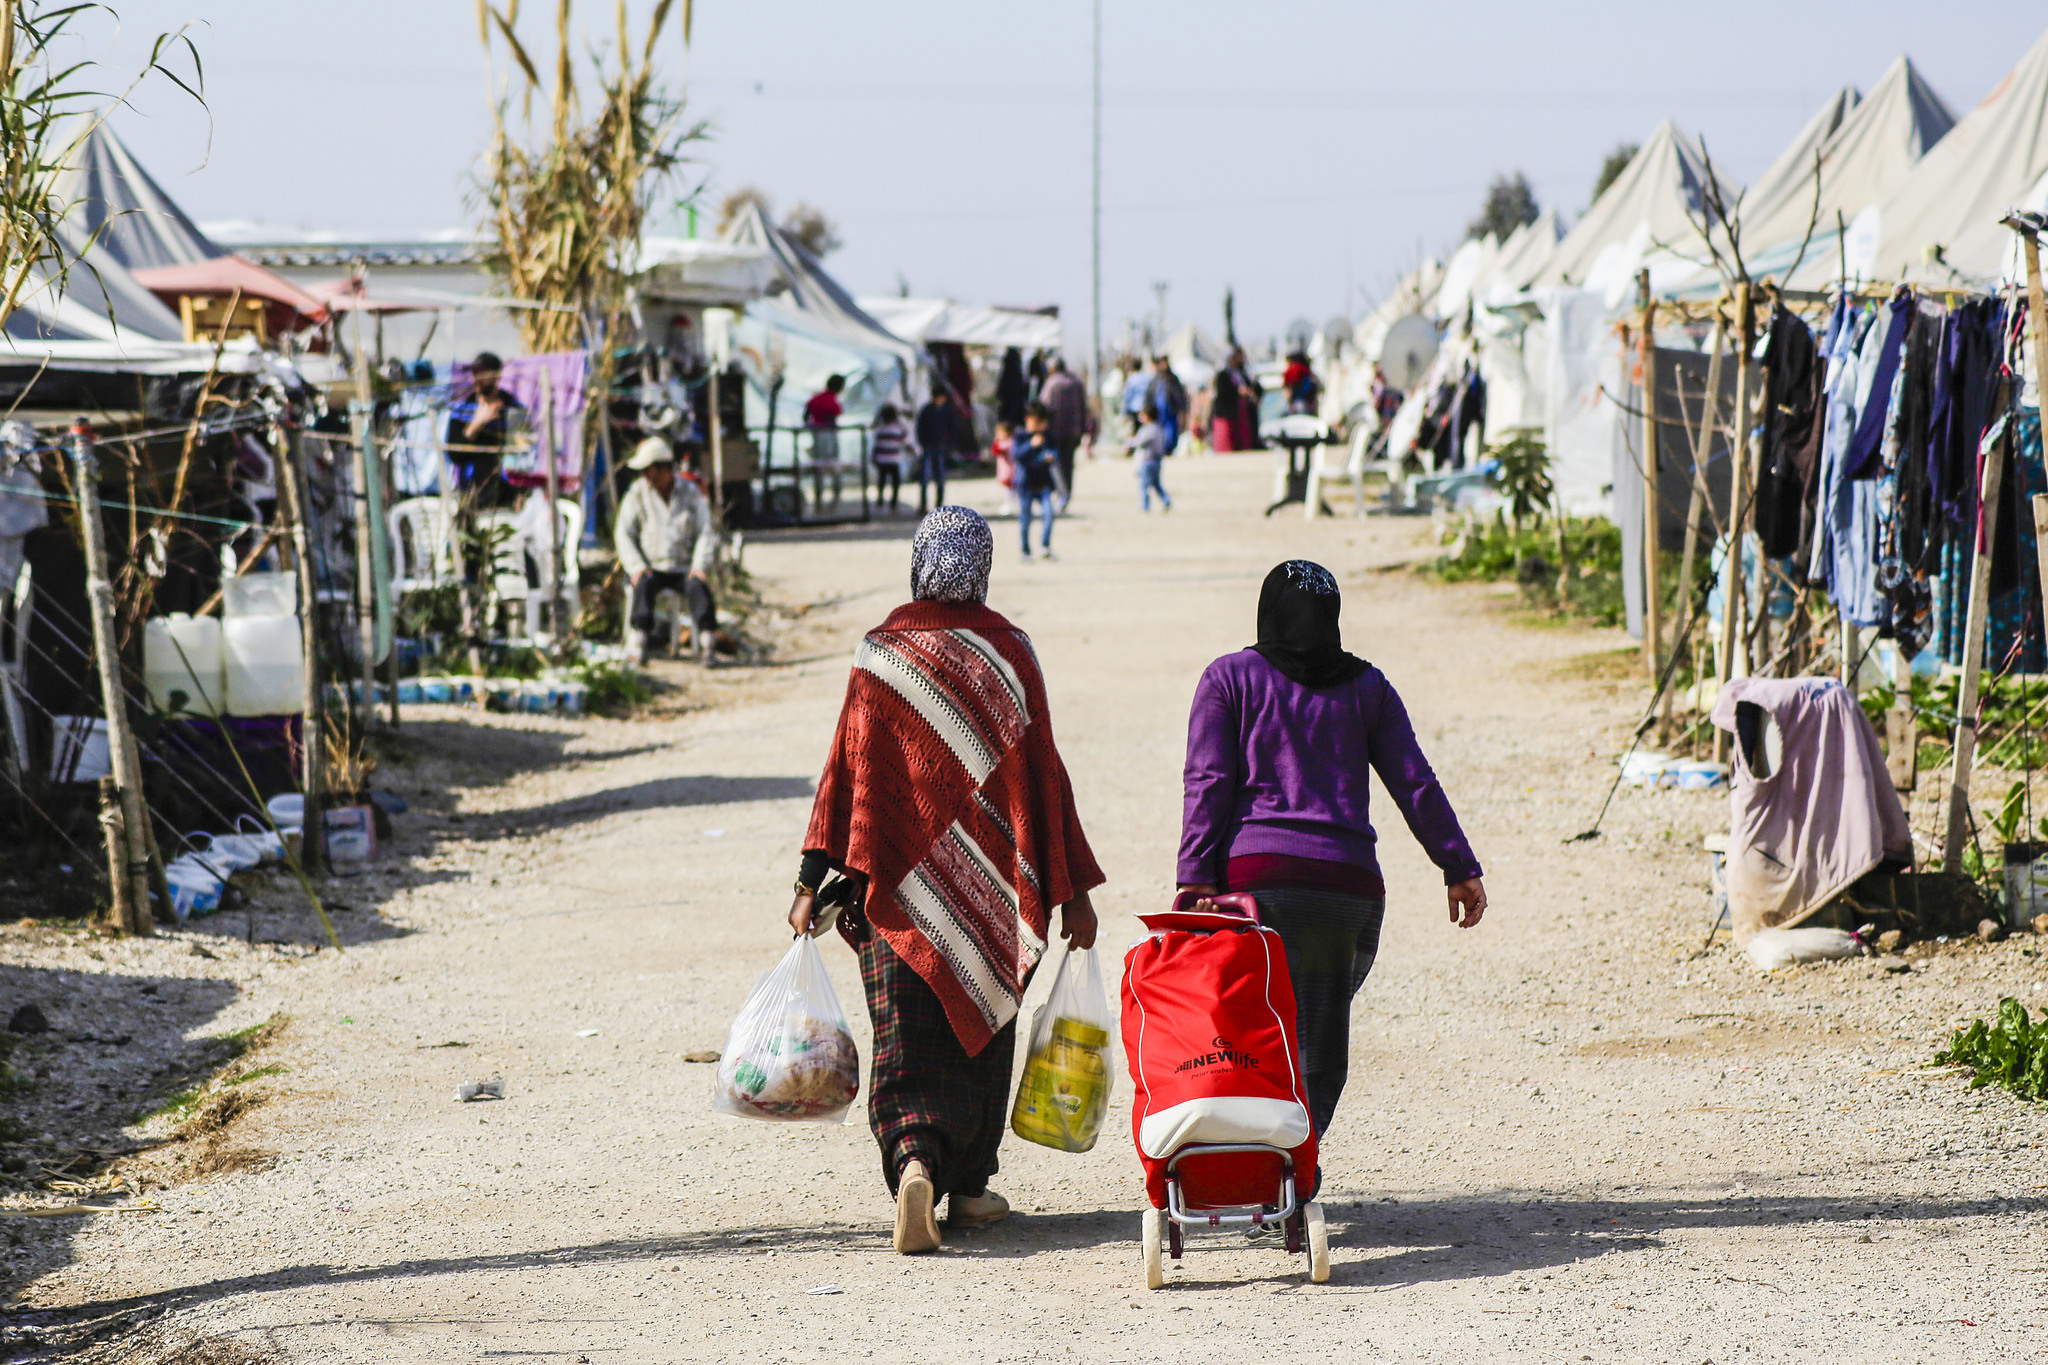 Image: Flickr/European Parliament. Syrian refugee camp in Turkey.